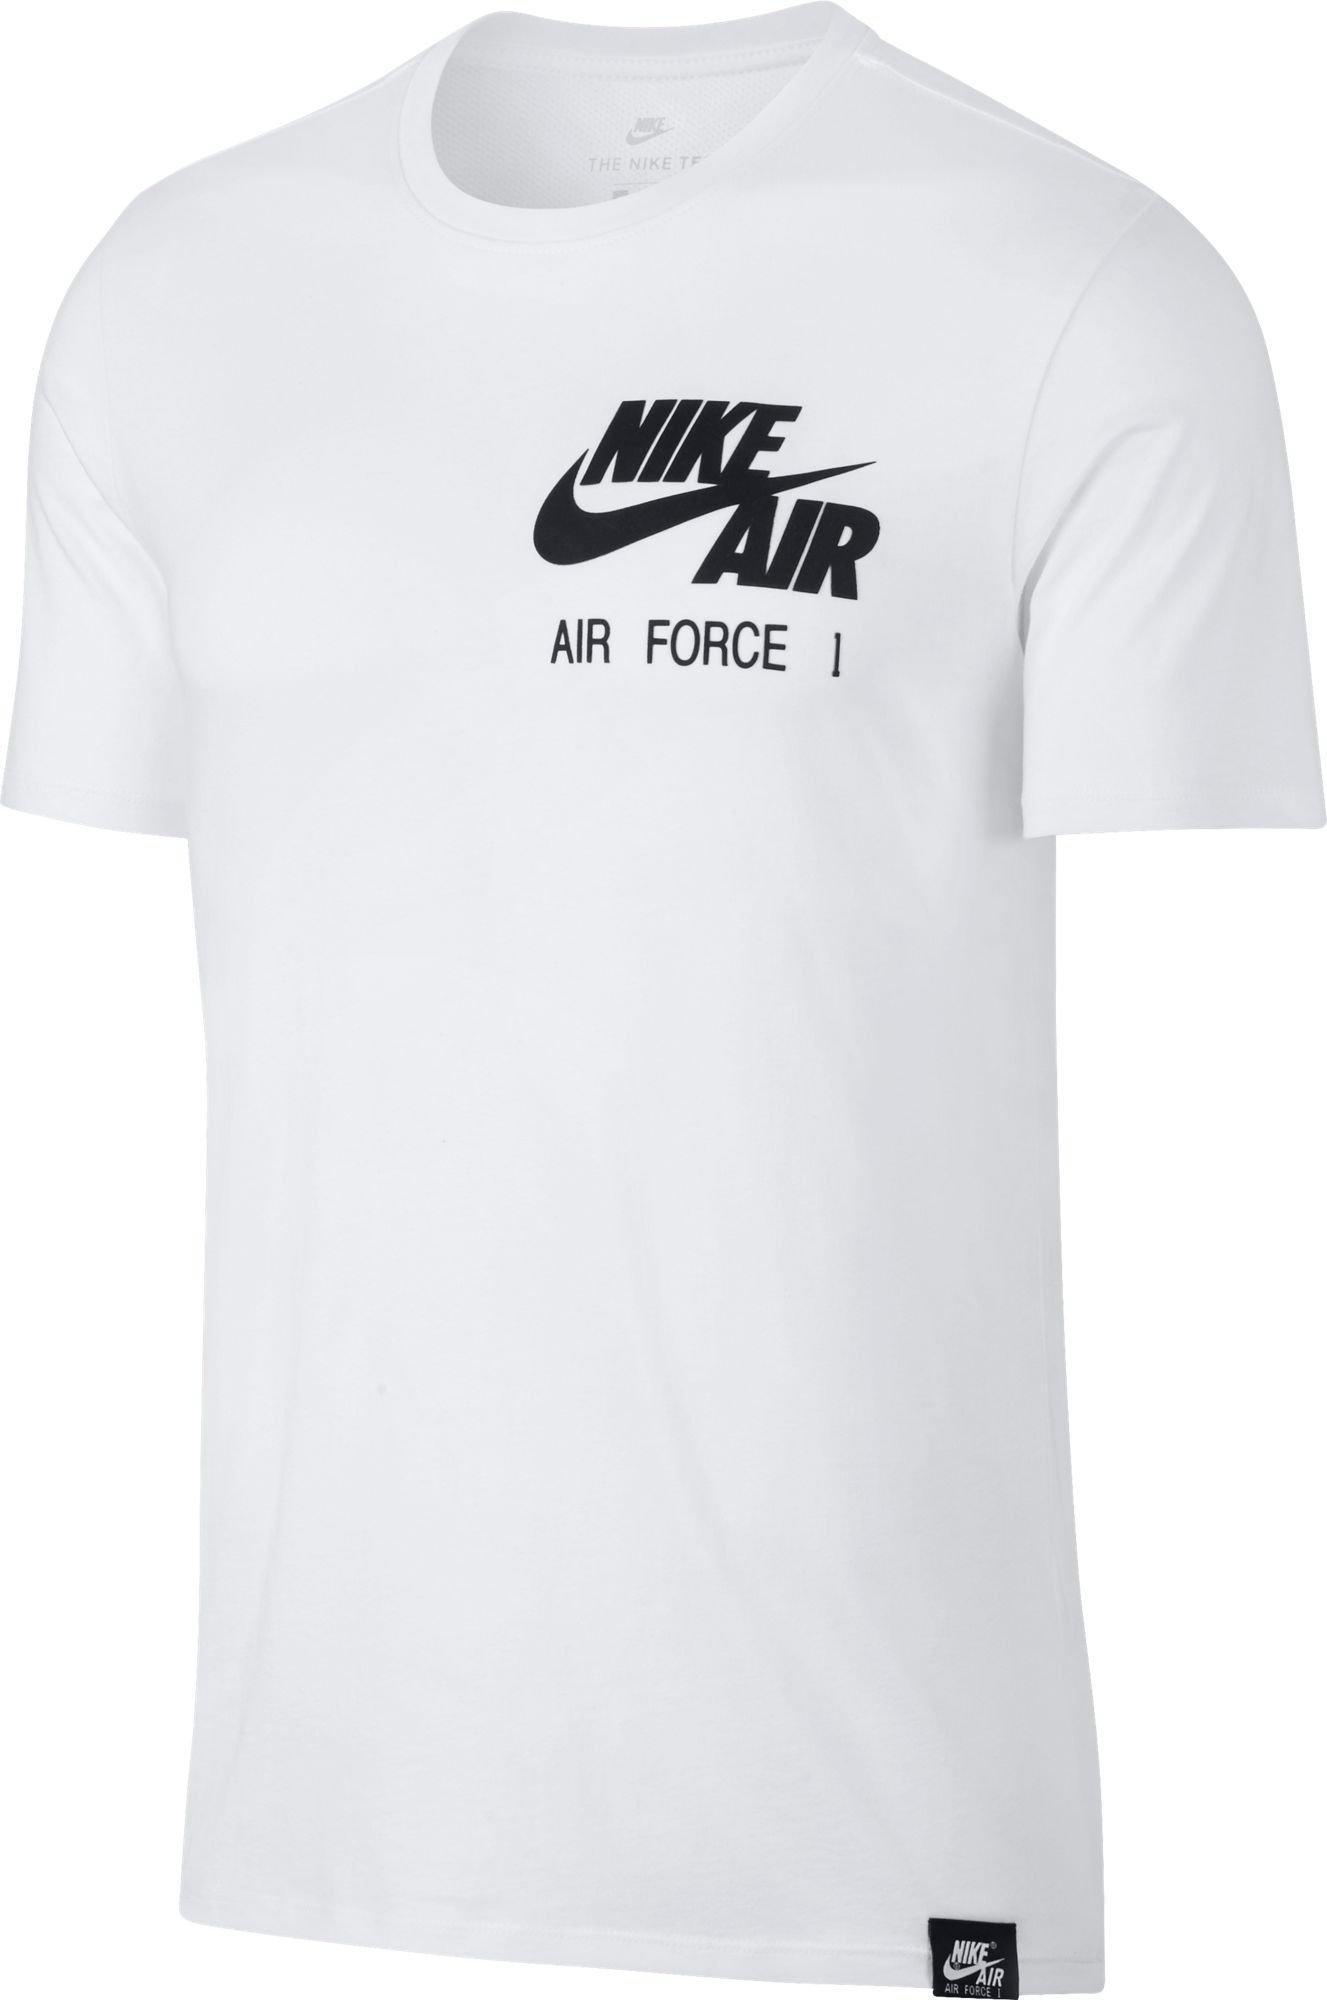 air force one shirt